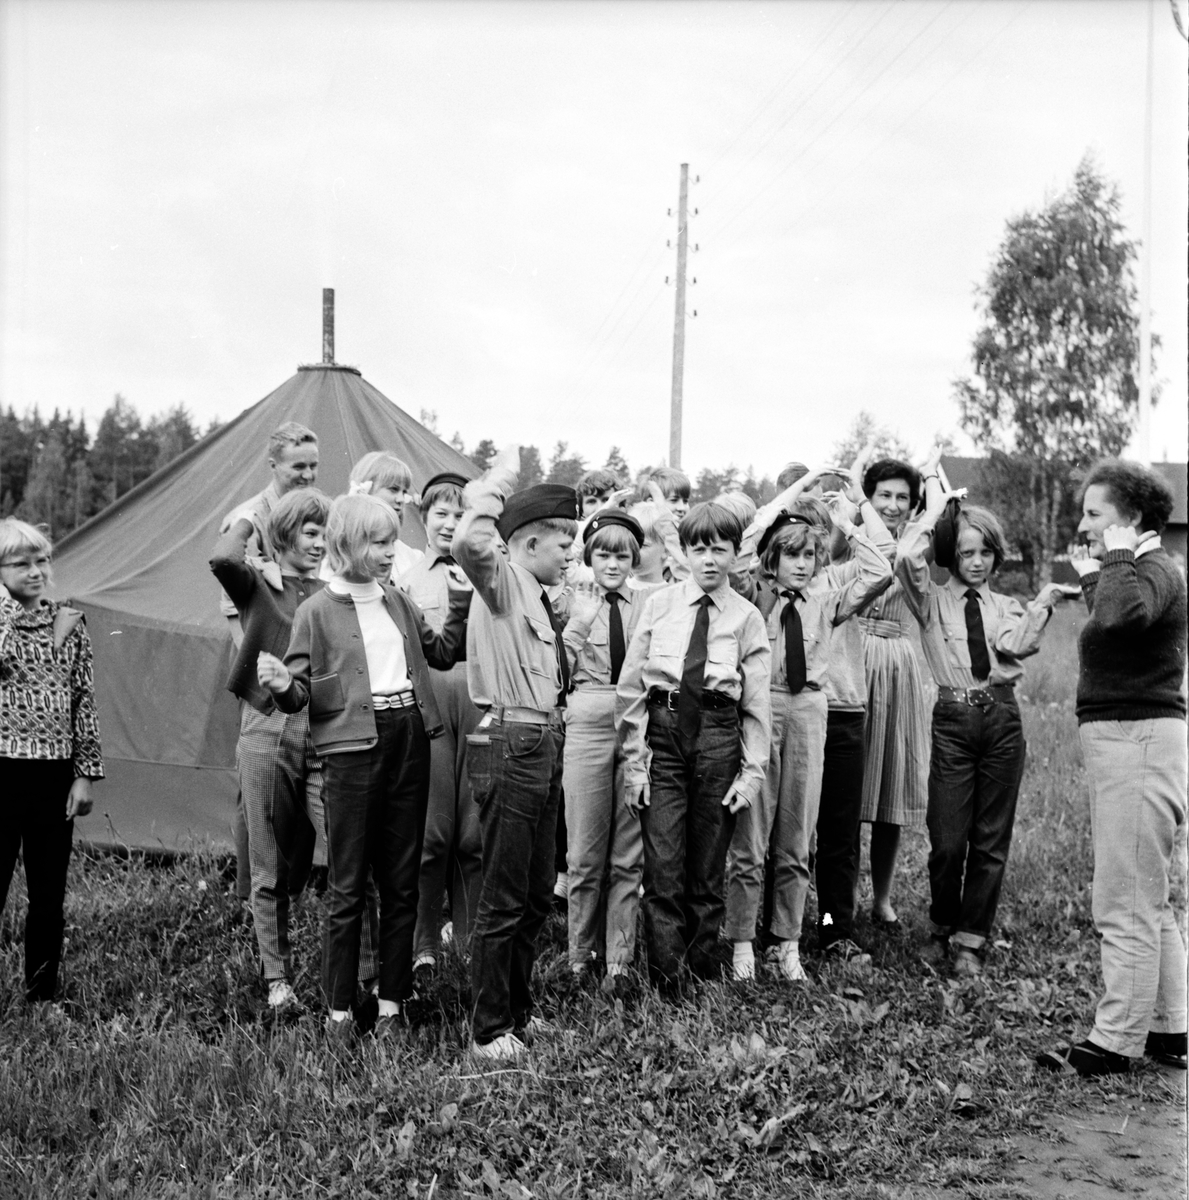 Stagården,
URK-läger,
18 Juni 1965